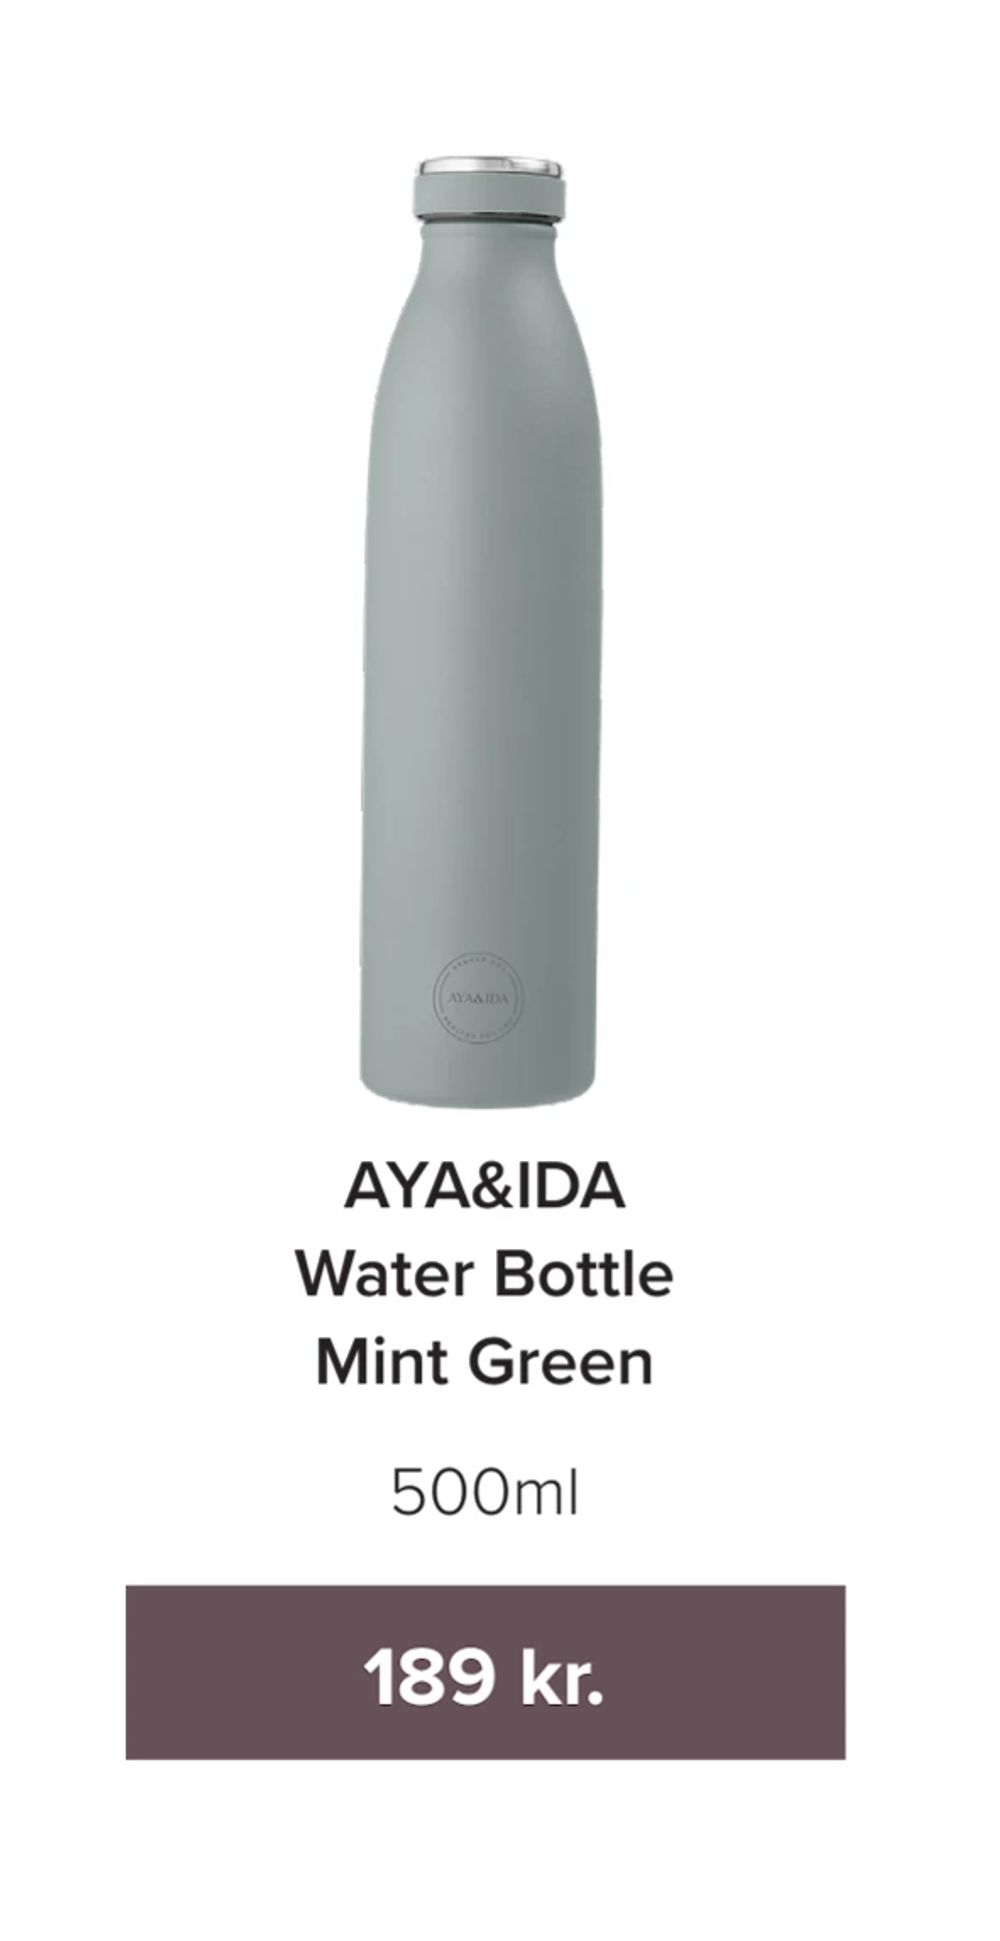 Tilbud på AYA&IDA Water Bottle Mint Green fra Helsemin til 189 kr.